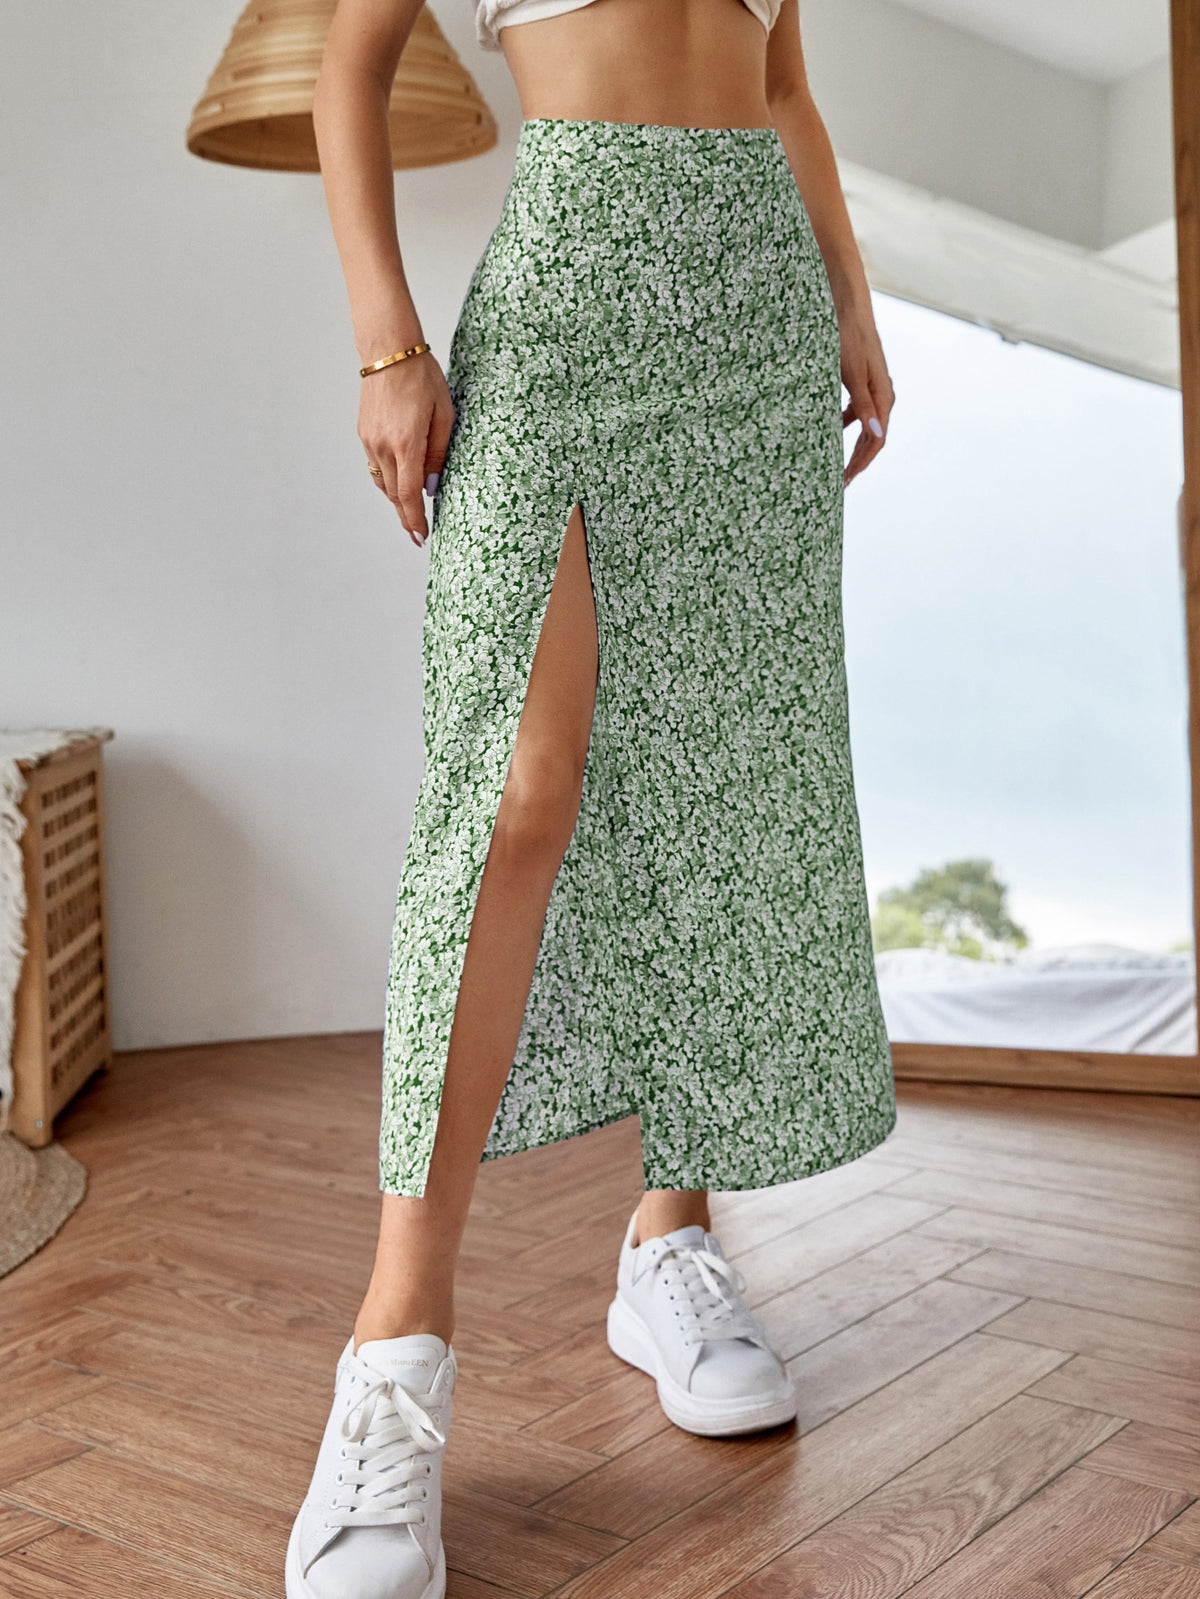 FULL TILT Girls Retro Floral Slit Skirt - GREEN